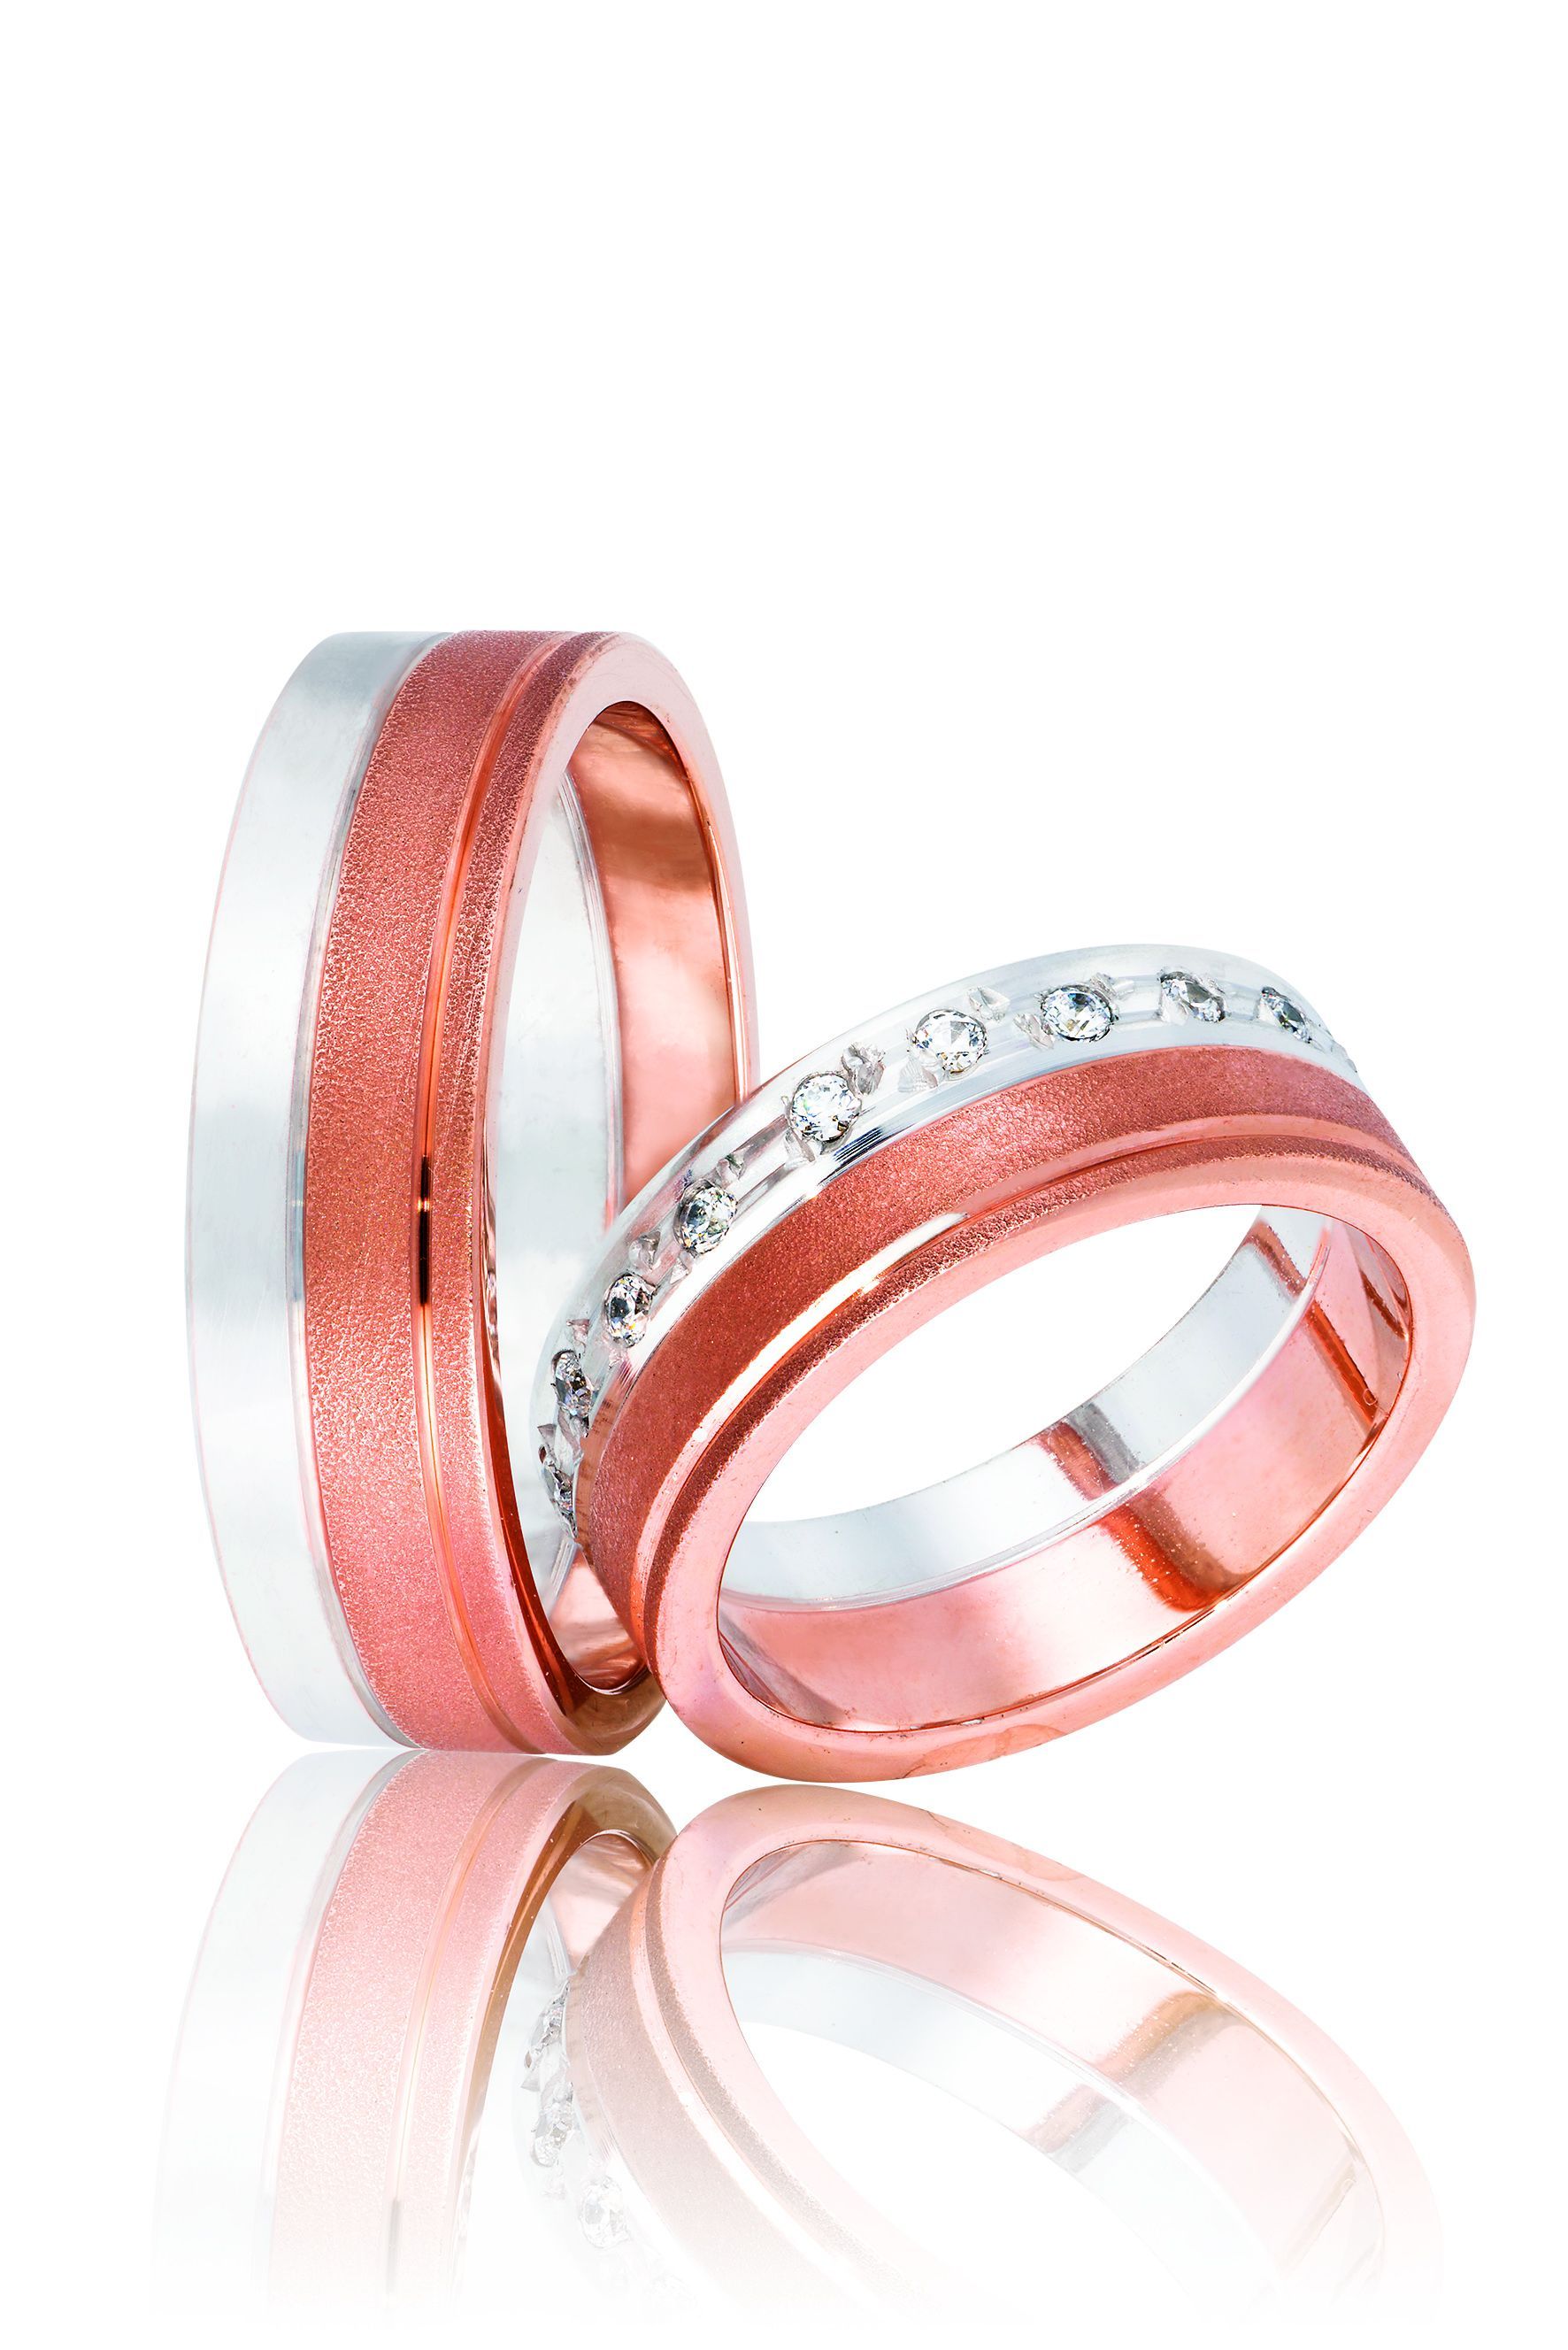 Βέρες γάμου απο λευκόχρυσο λουστρέ και σαγρέ ροζ χρυσό , 6.5mm (code 1Wr)